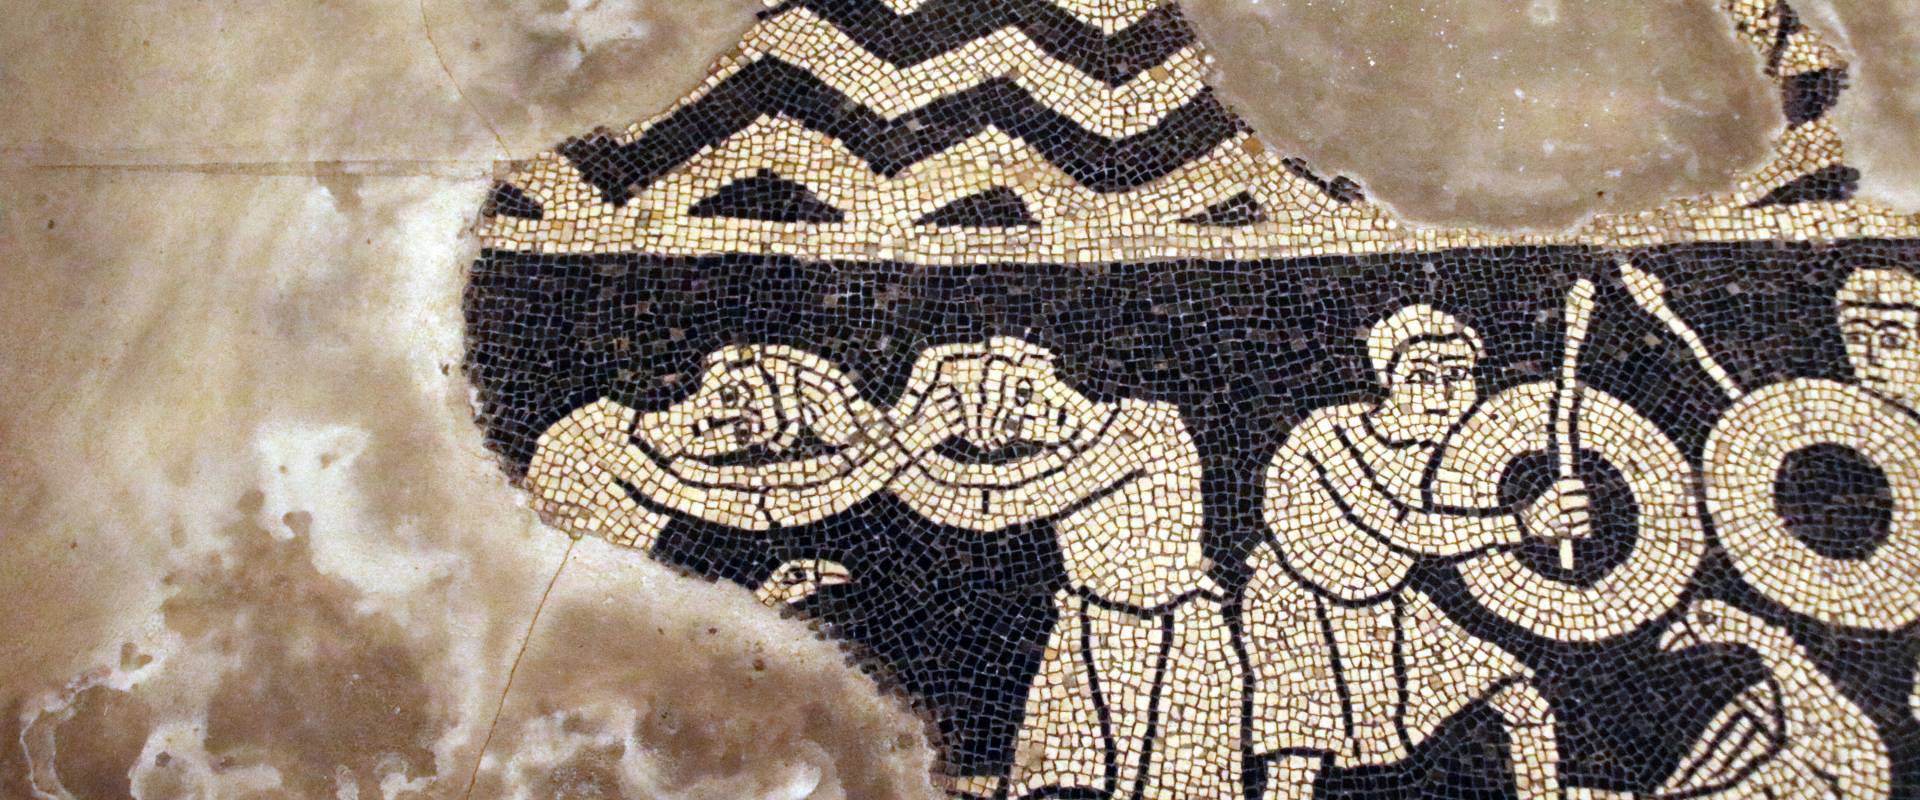 Basilica di San Savino (Piacenza), mosaico con segni zodiacali entro medaglioni, prima metà del secolo xii 01 photo by Mongolo1984